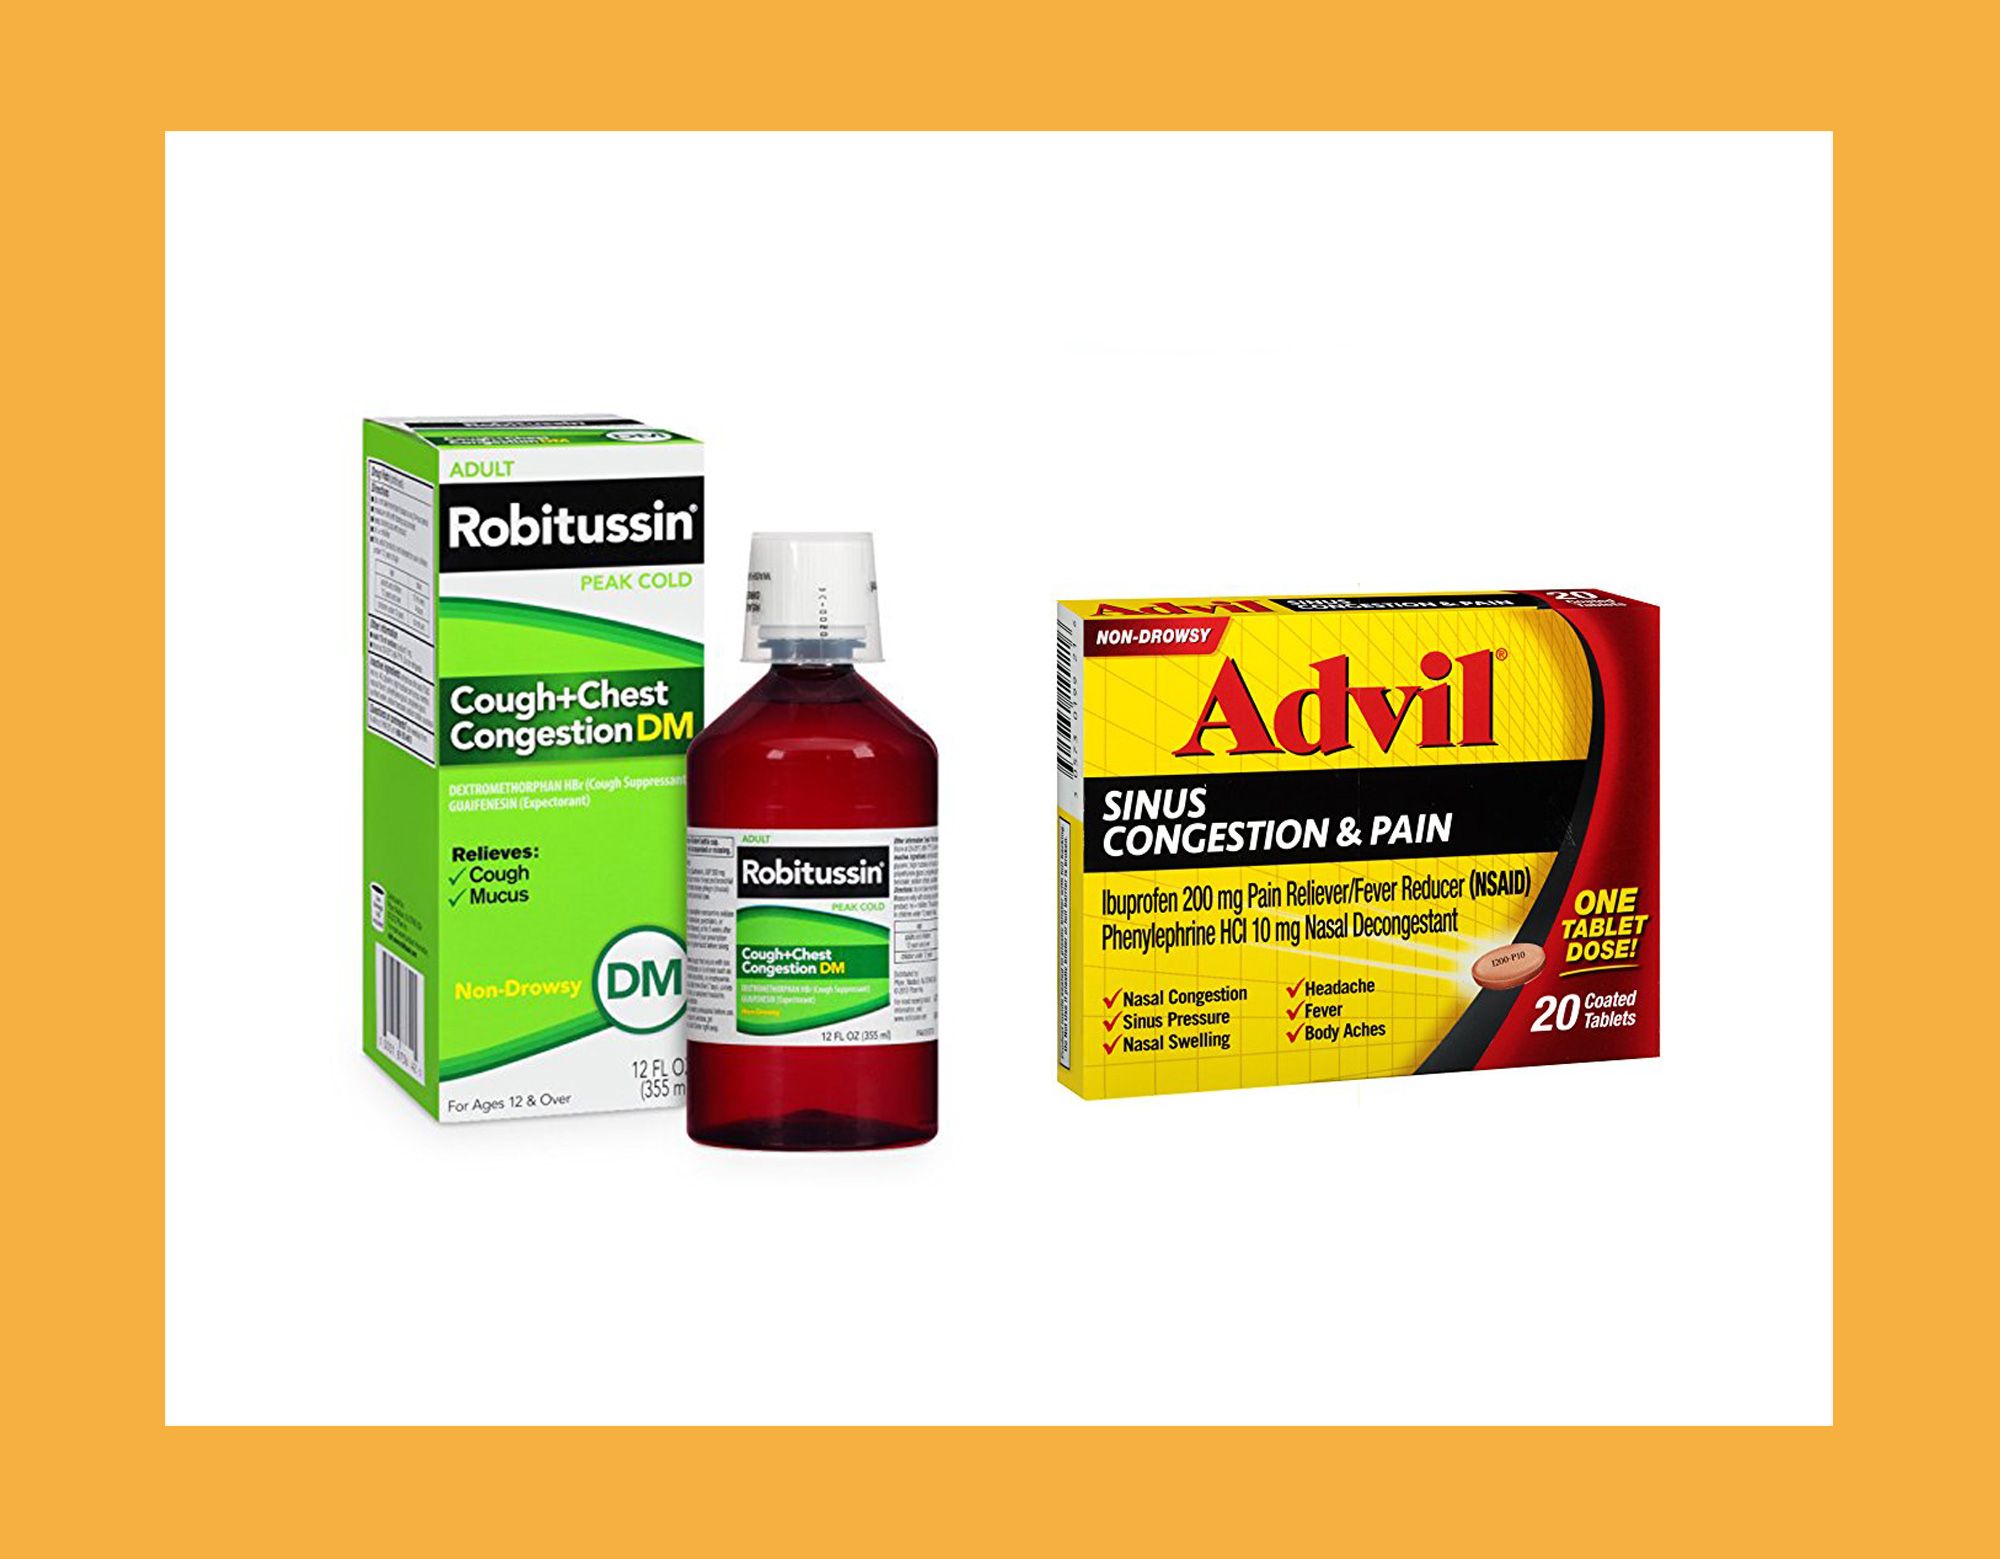 os melhores medicamentos de venda livre para tosse e resfriado